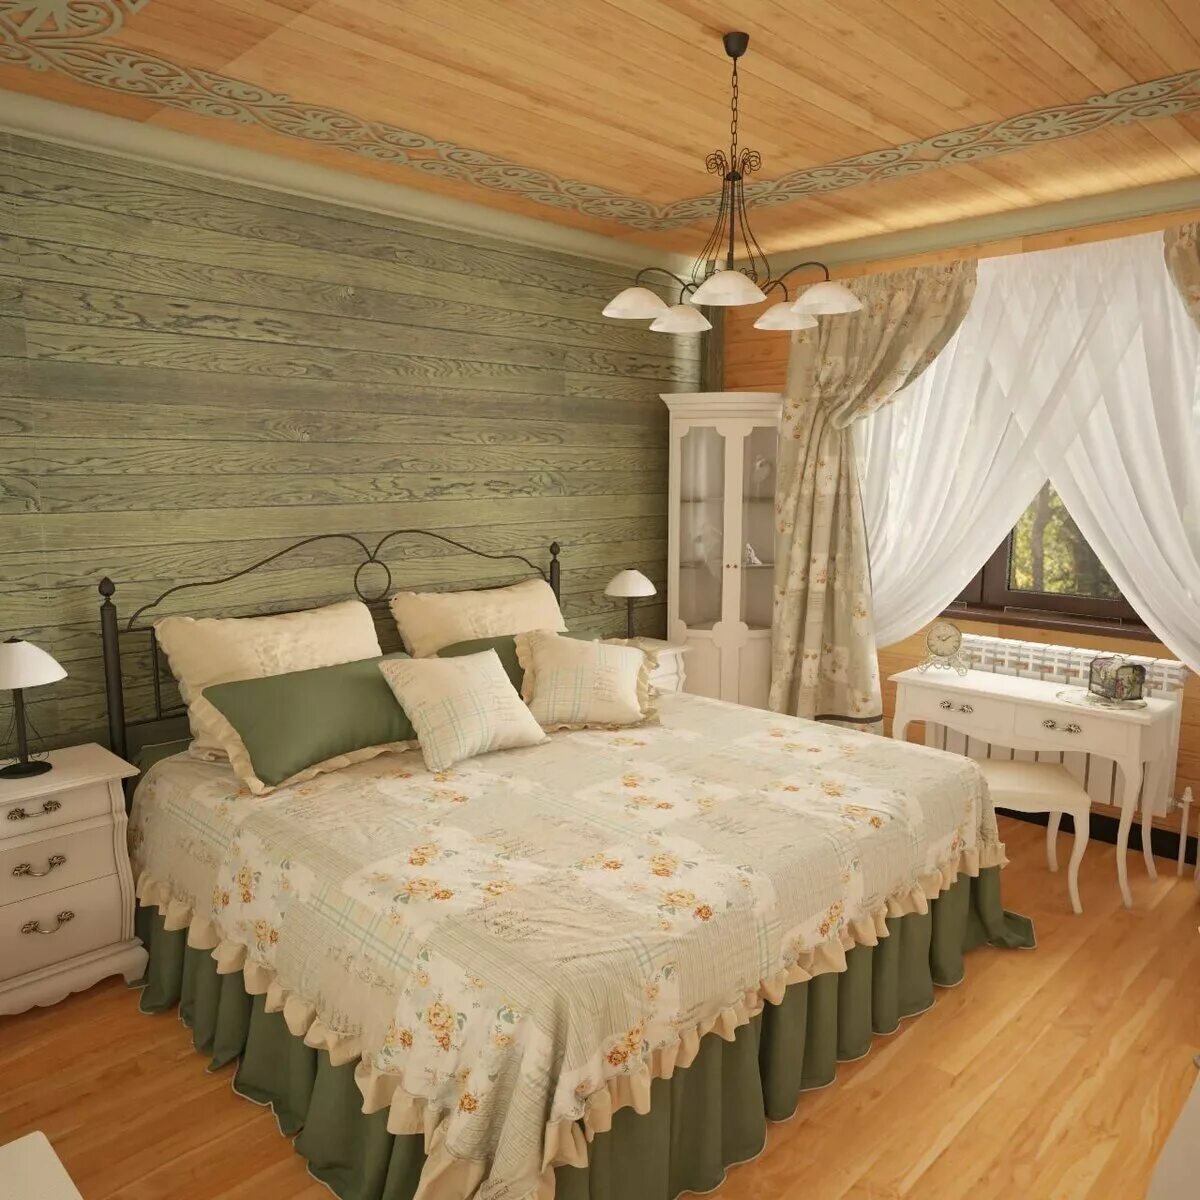 Дизайн комнат в деревянном доме. Спальня в деревянноммдоме. Спальня в деревенском стиле. Интерьер спальни в деревянном доме. Спальня в дачном доме.